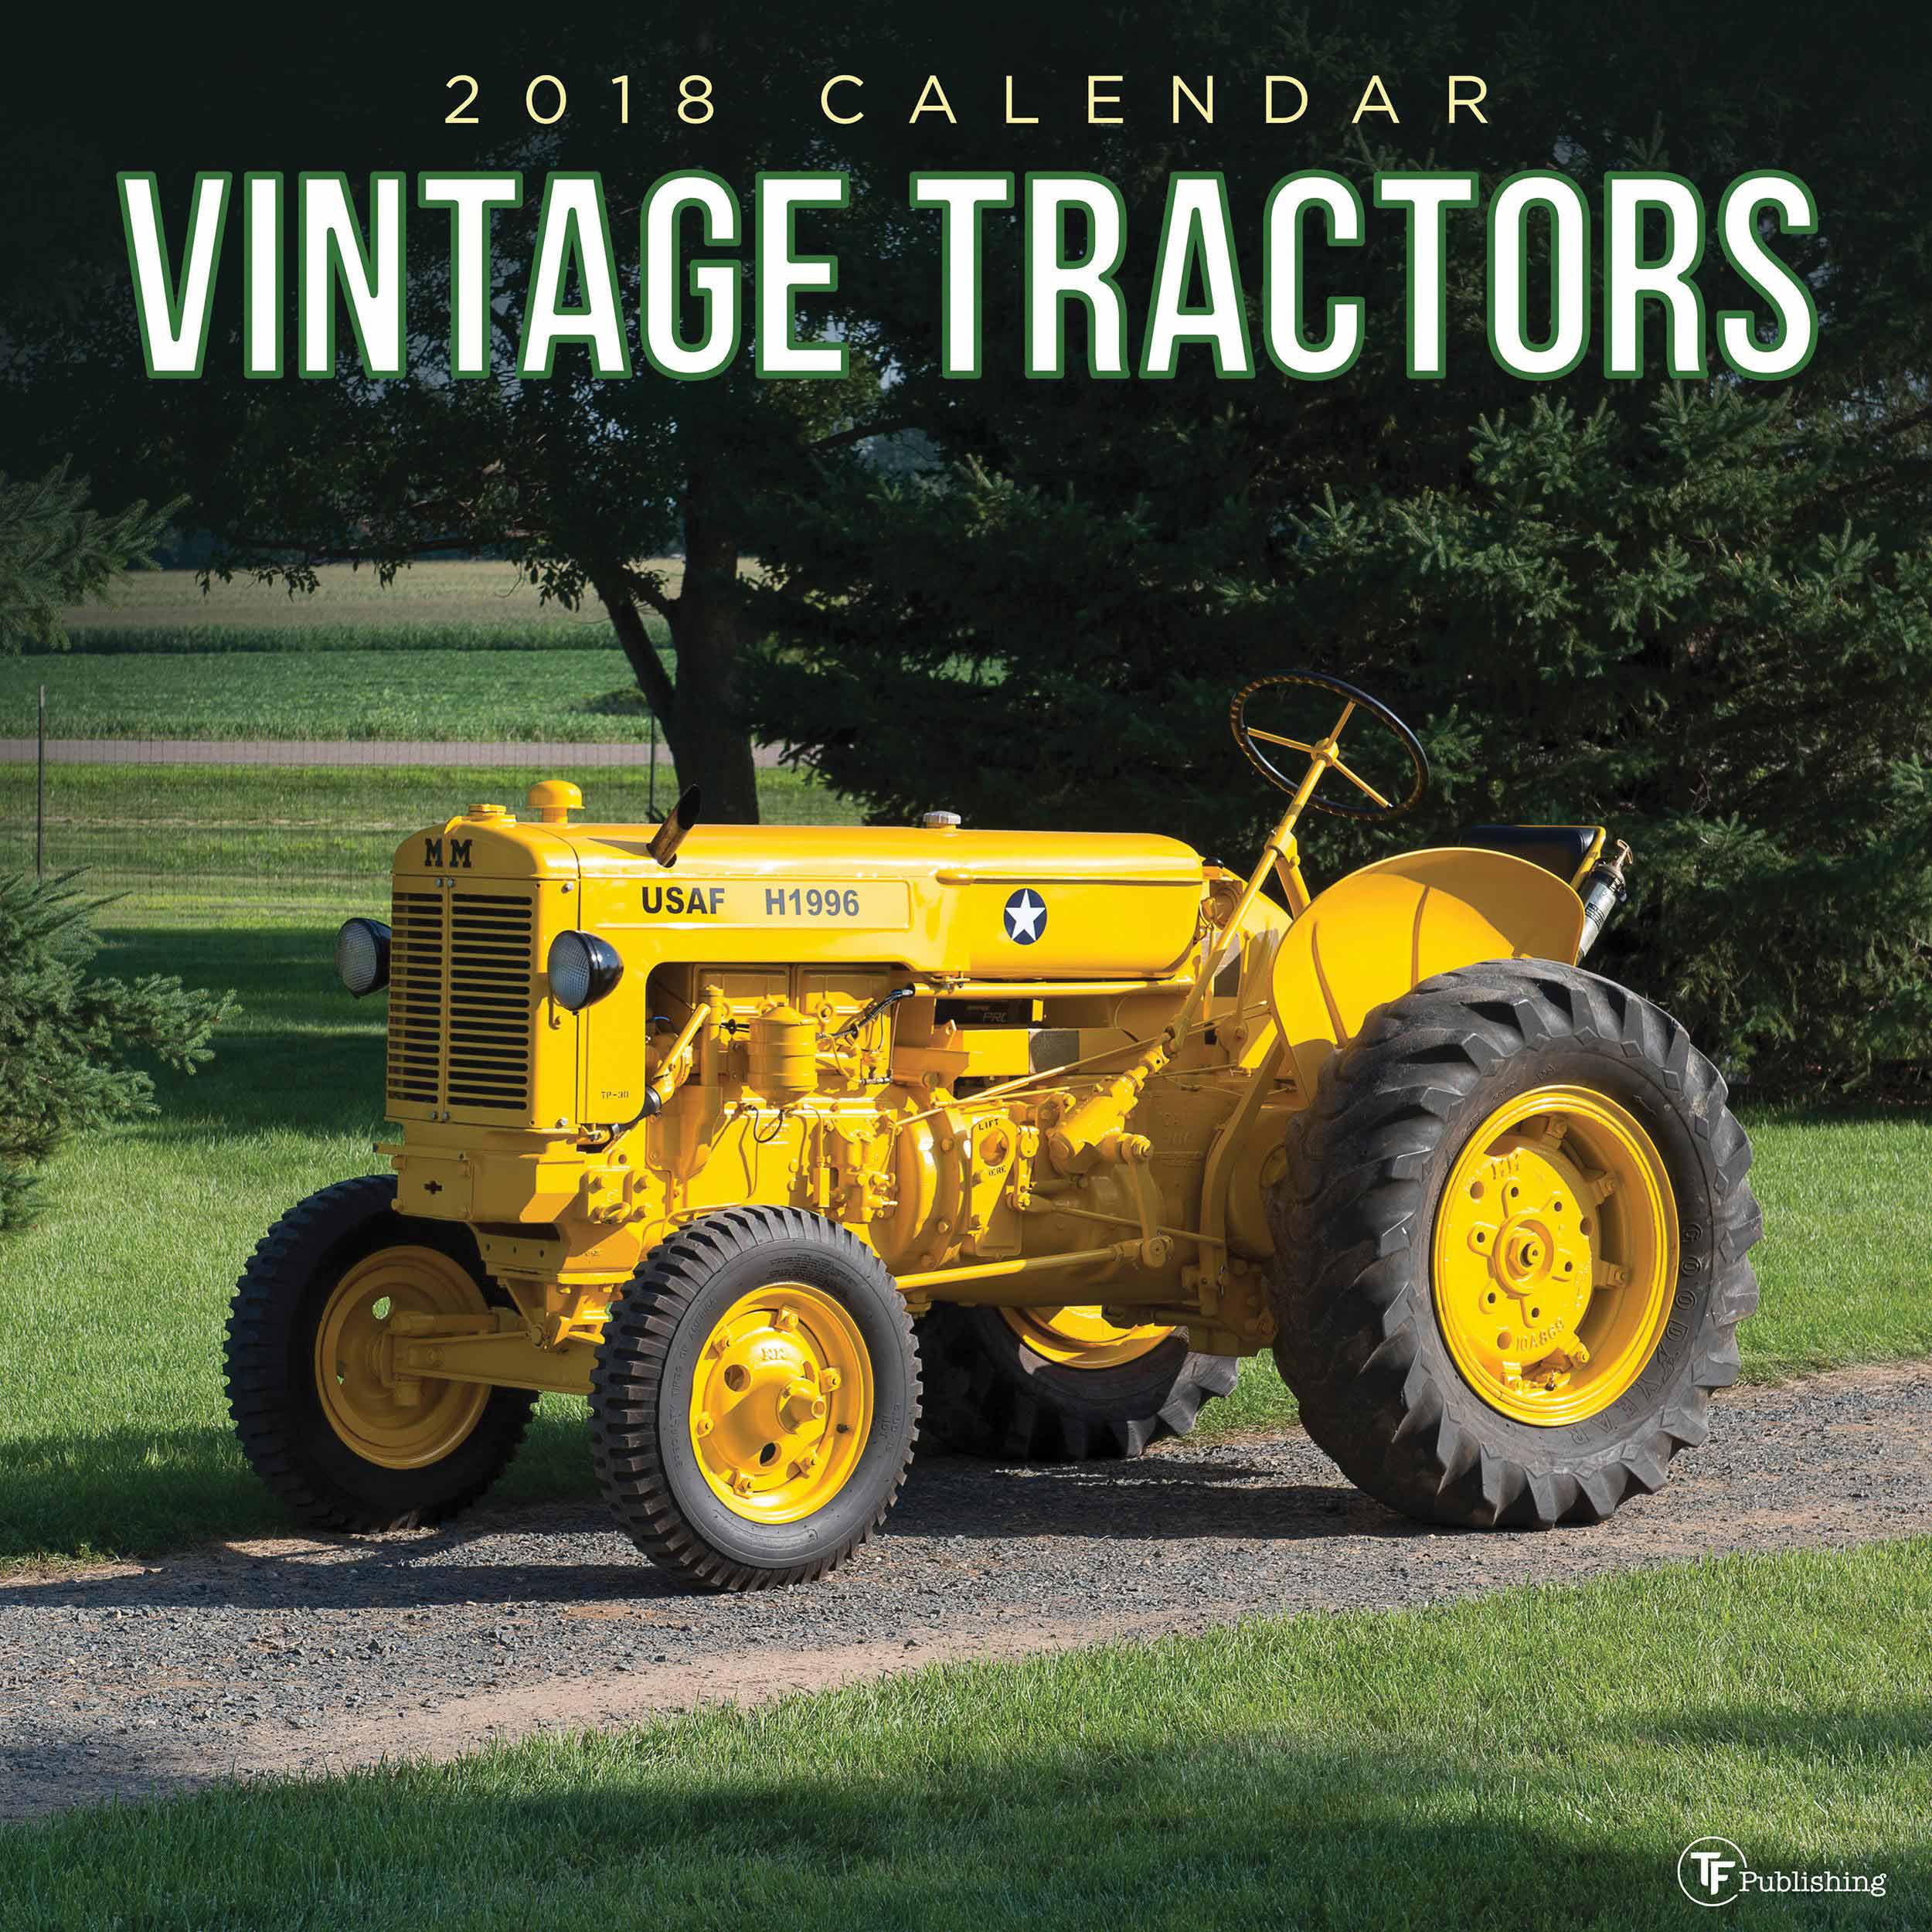 Vintage Tractors Calendar 2018 - Calendar Club UK